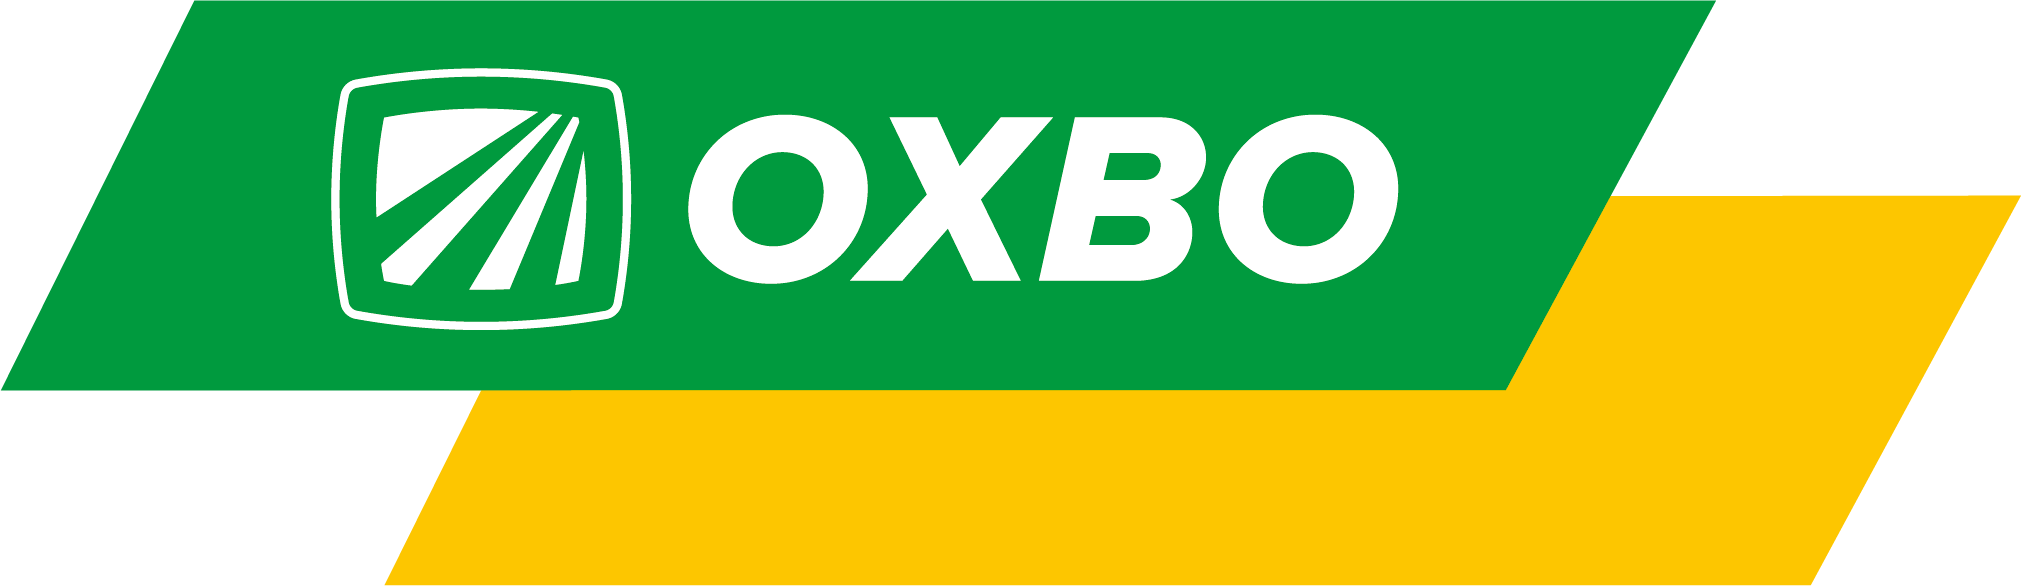 Oxbo_logo